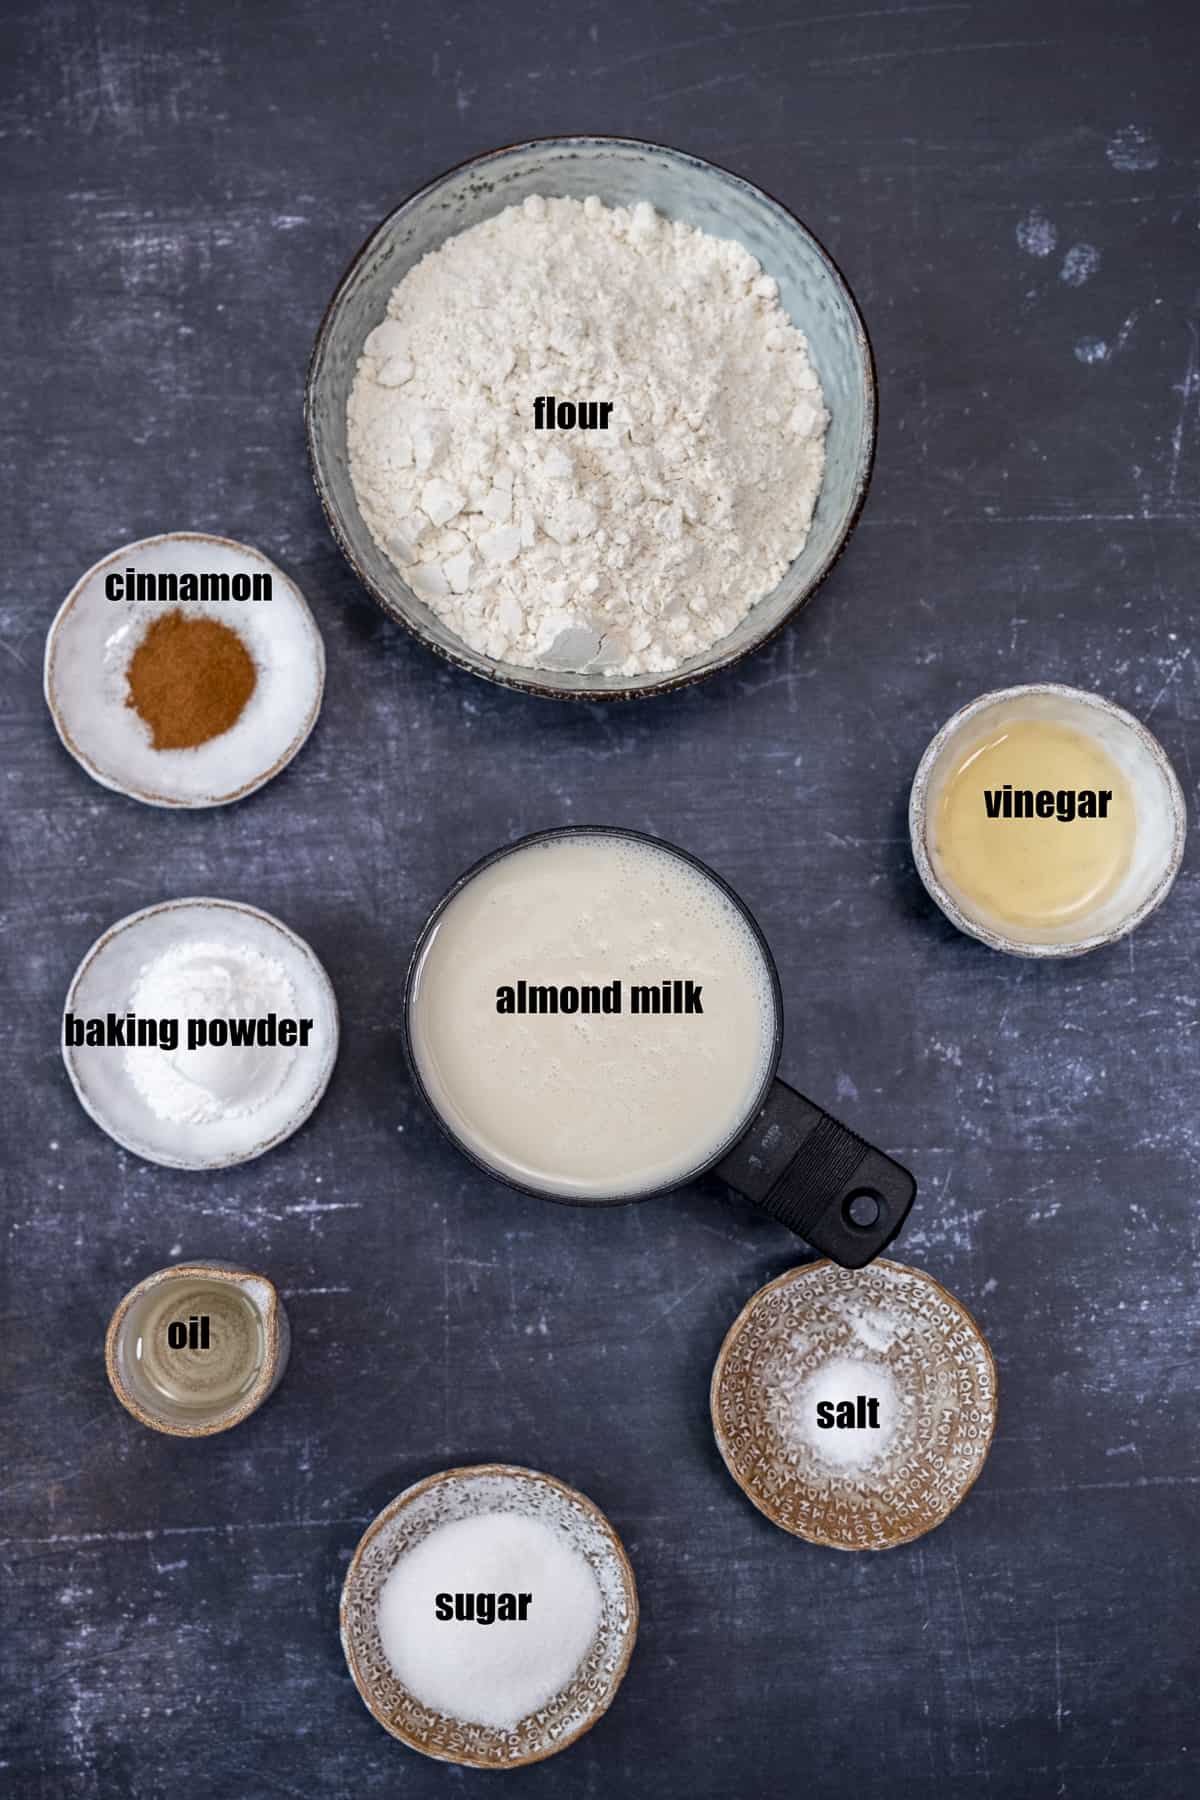 杏仁奶、醋、油、面粉、肉桂、糖、盐和发酵粉放在不同的碗里，背景要暗。